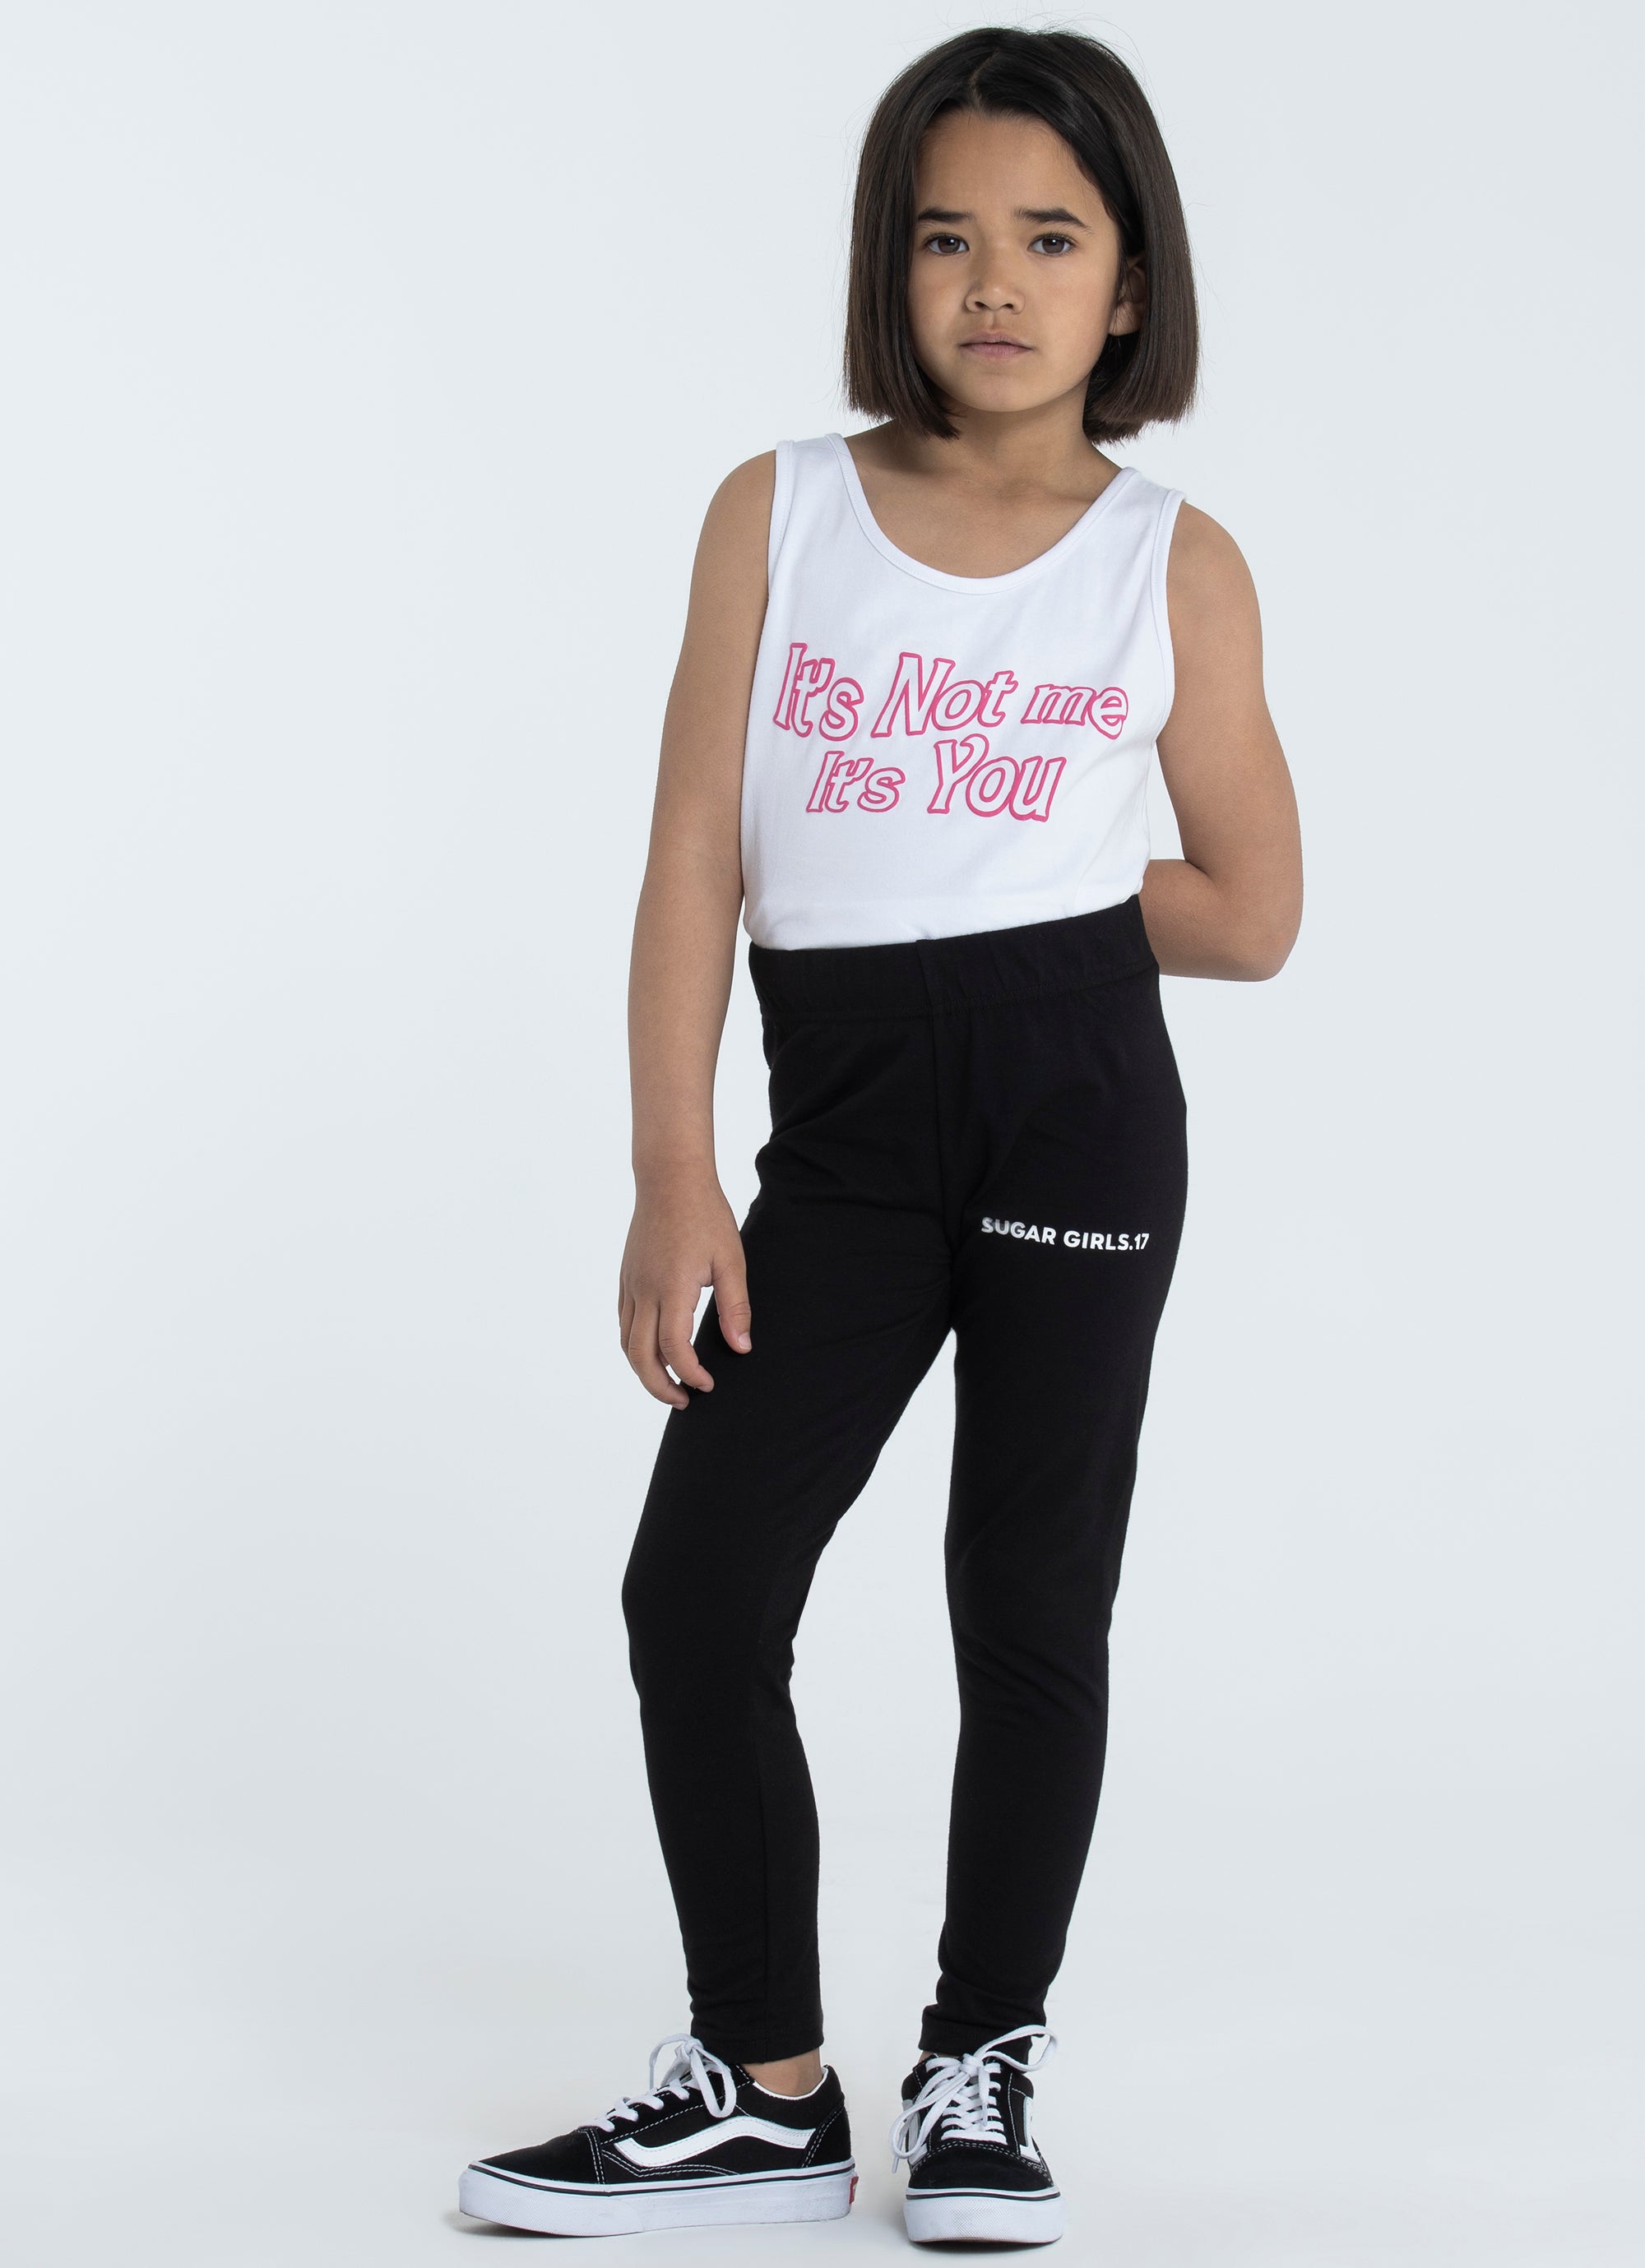 Brand New Girls Vans Chalkboard Leggings Black/ White Size Medium | eBay